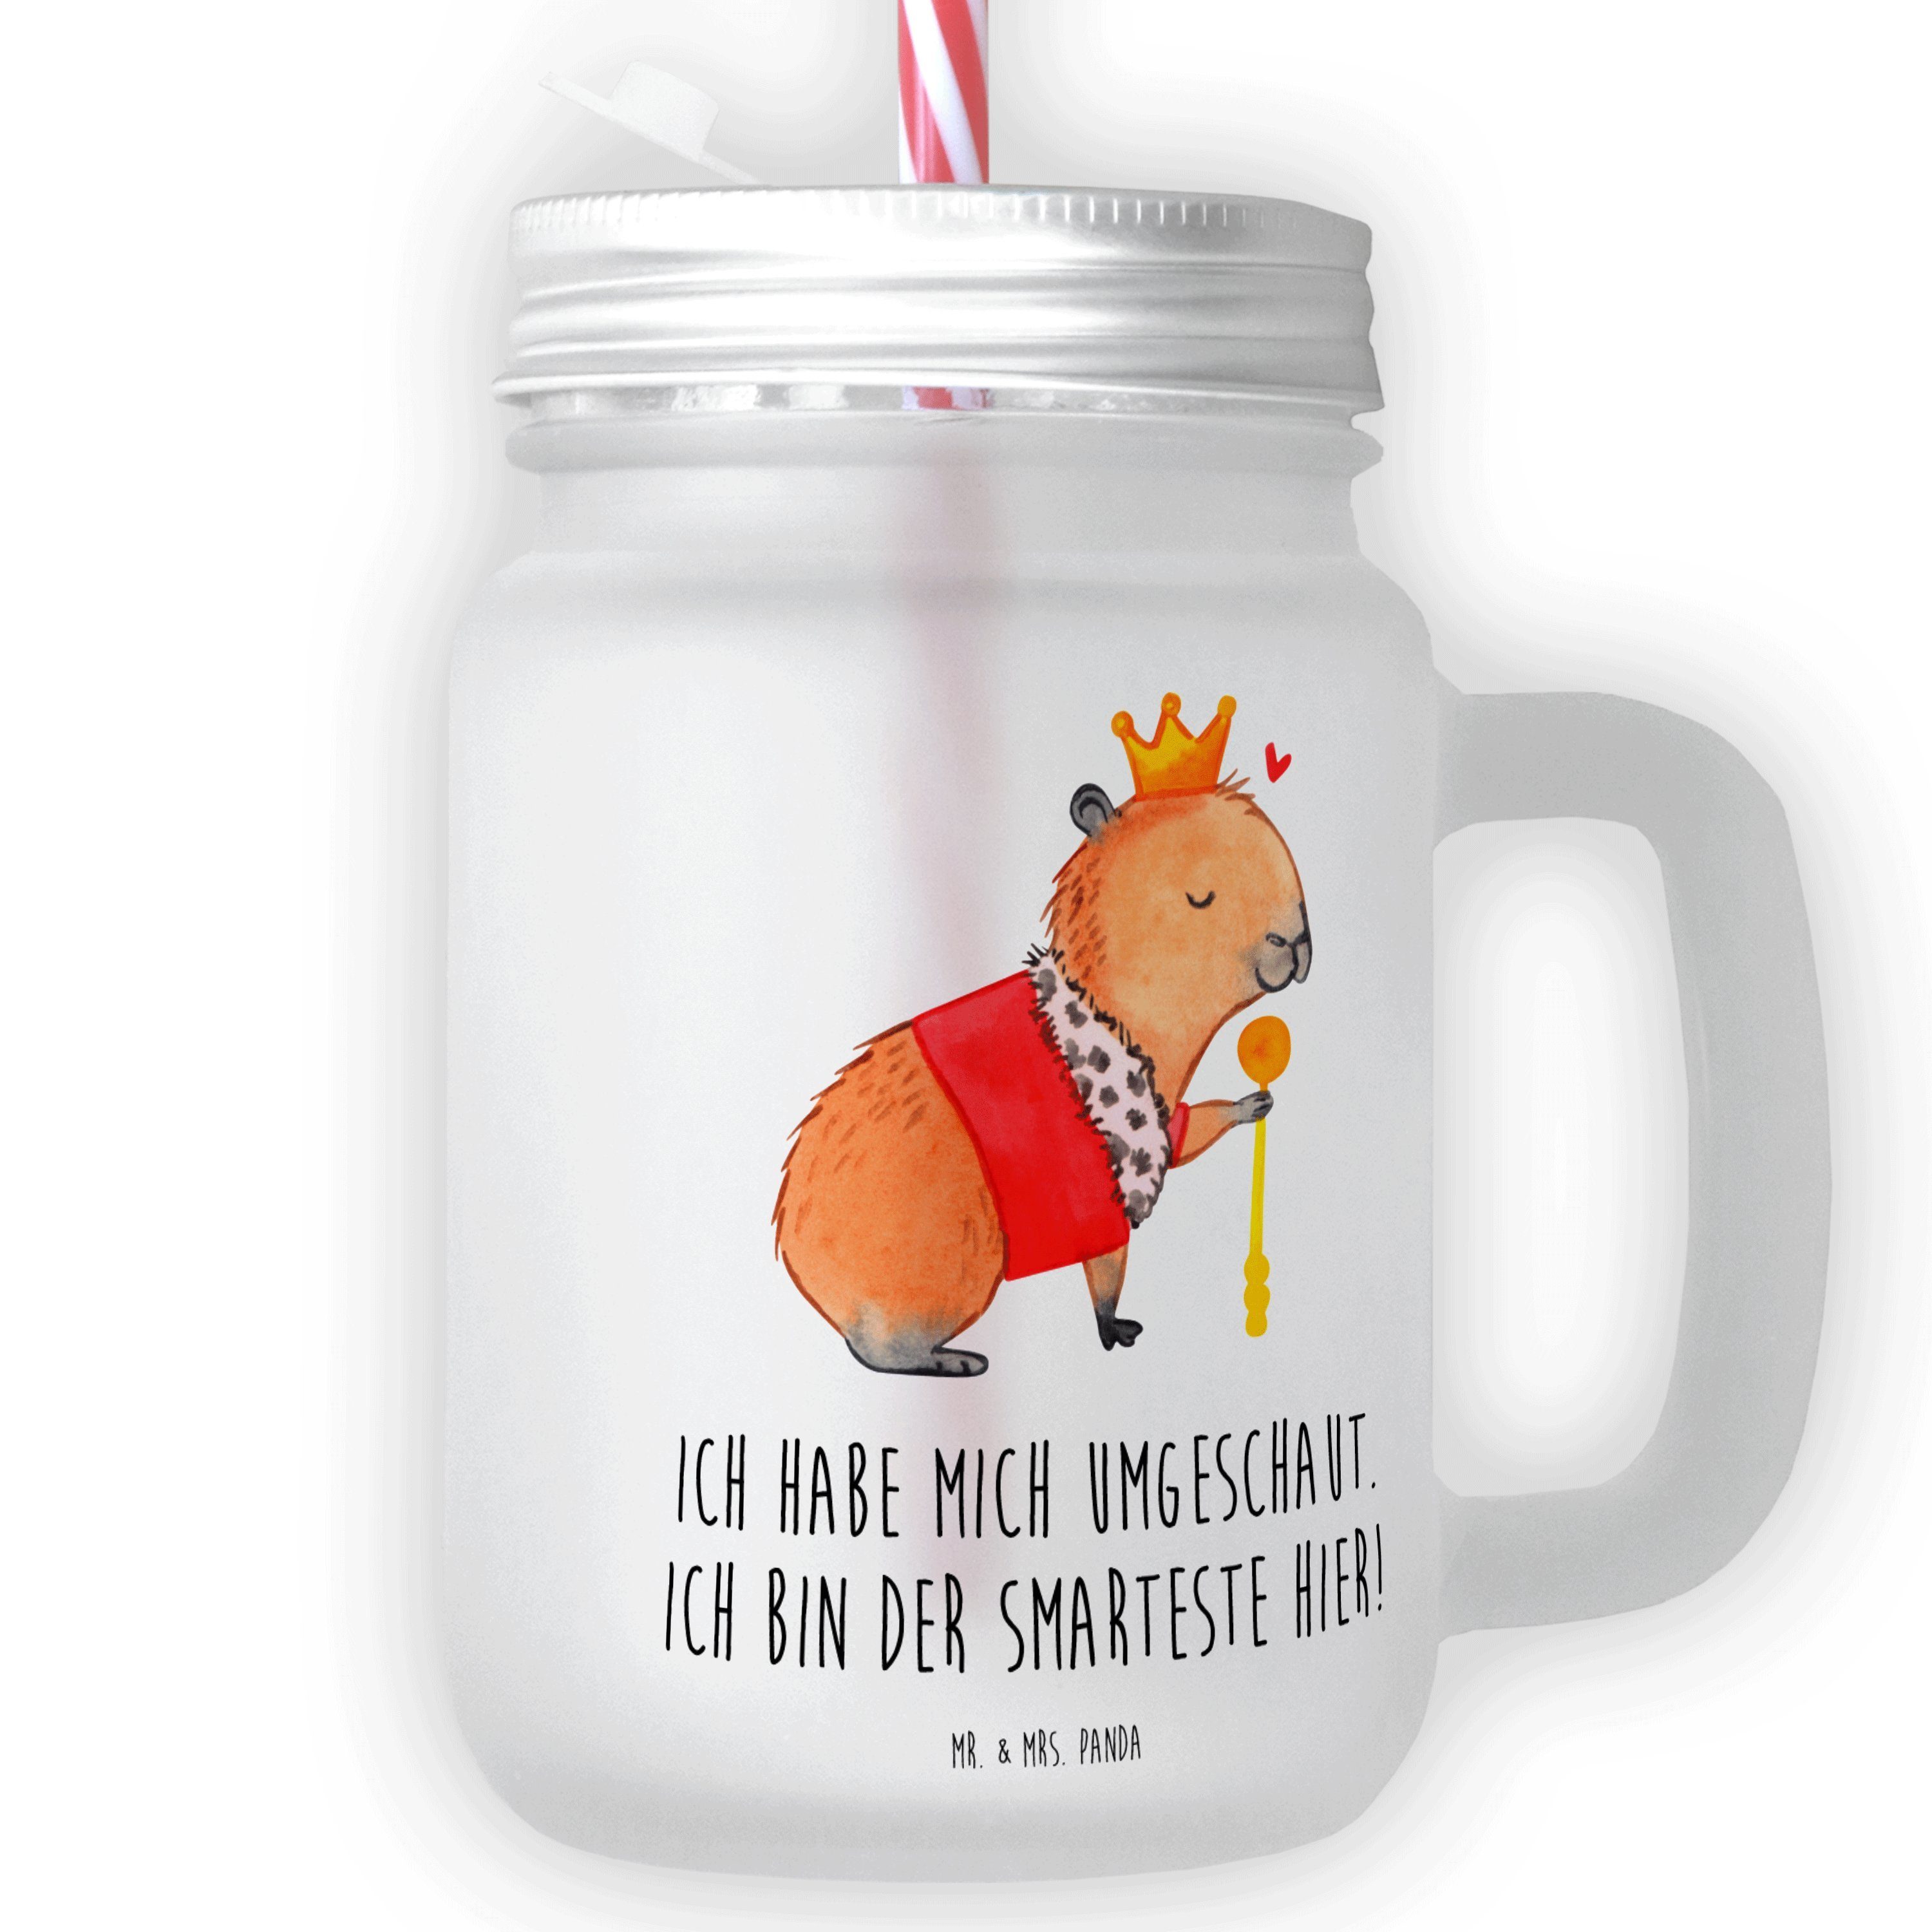 Mr. & Mrs. Panda Glas Capybara König - Transparent - Geschenk, Glas, Einmachglas, Trinkglas, Premium Glas